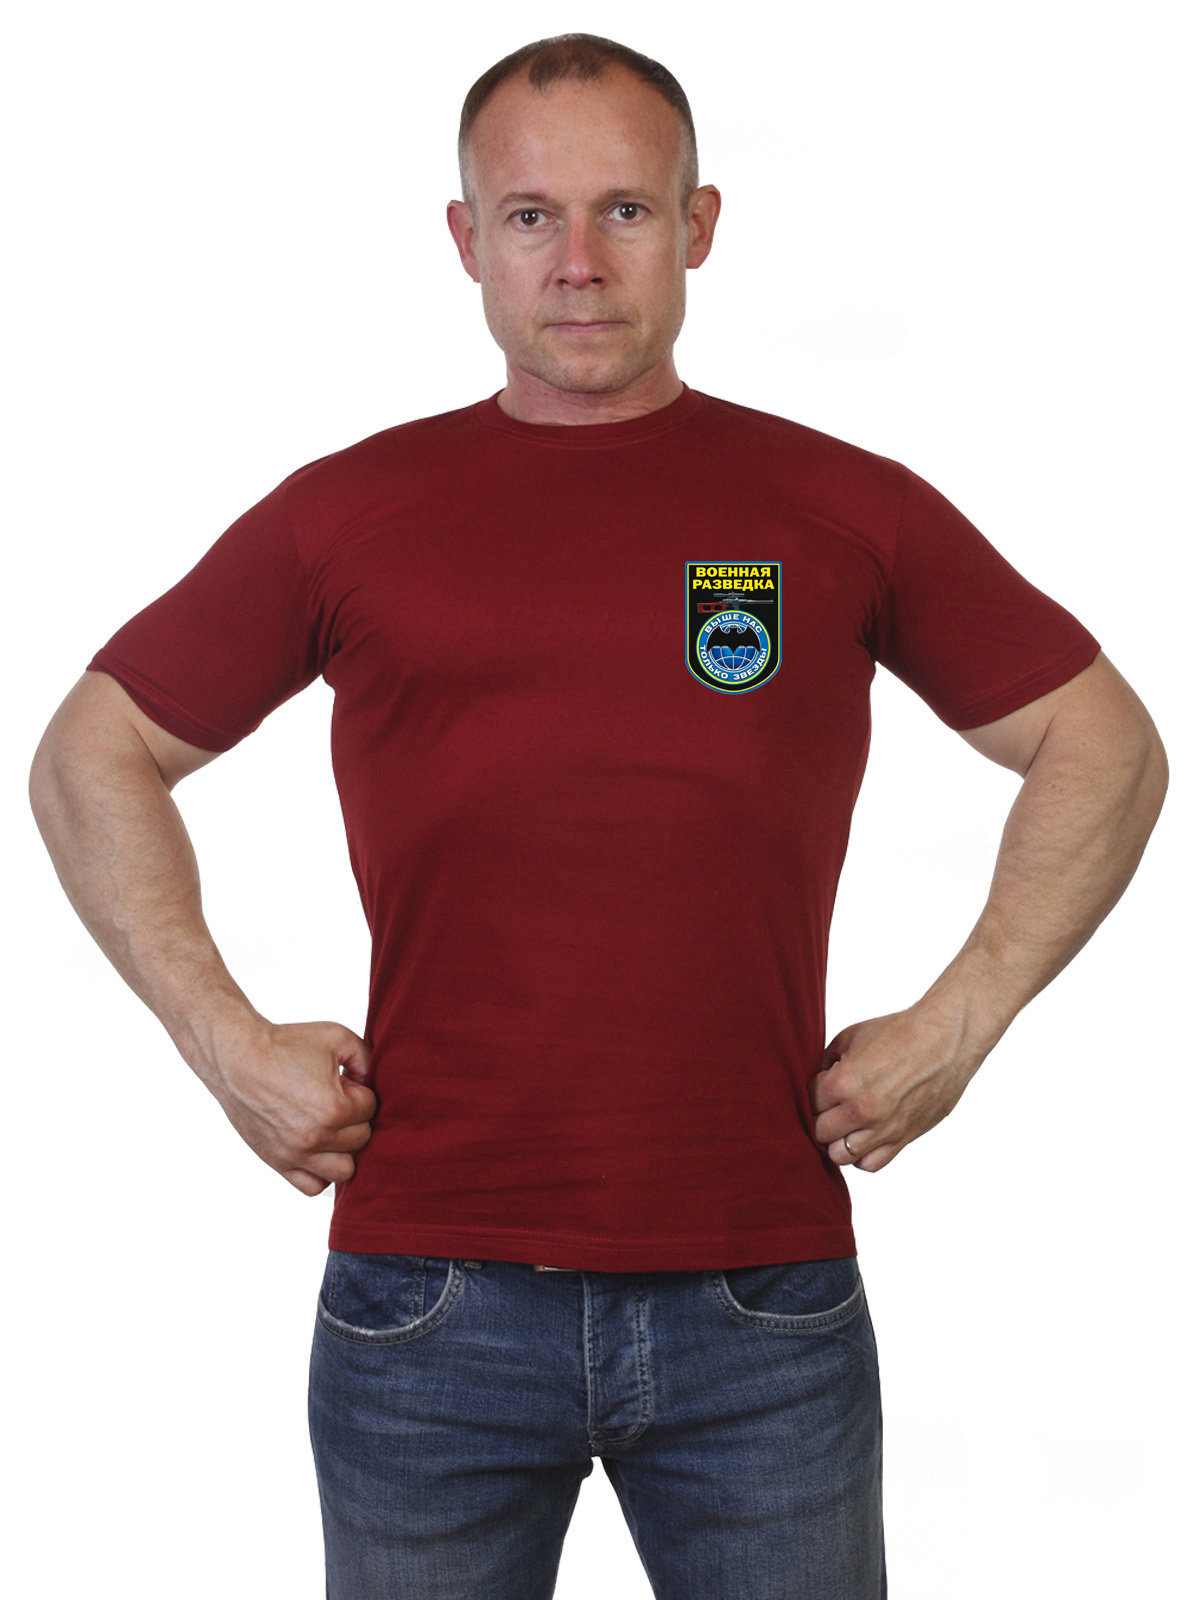 Краповая футболка военной разведки с девизом 